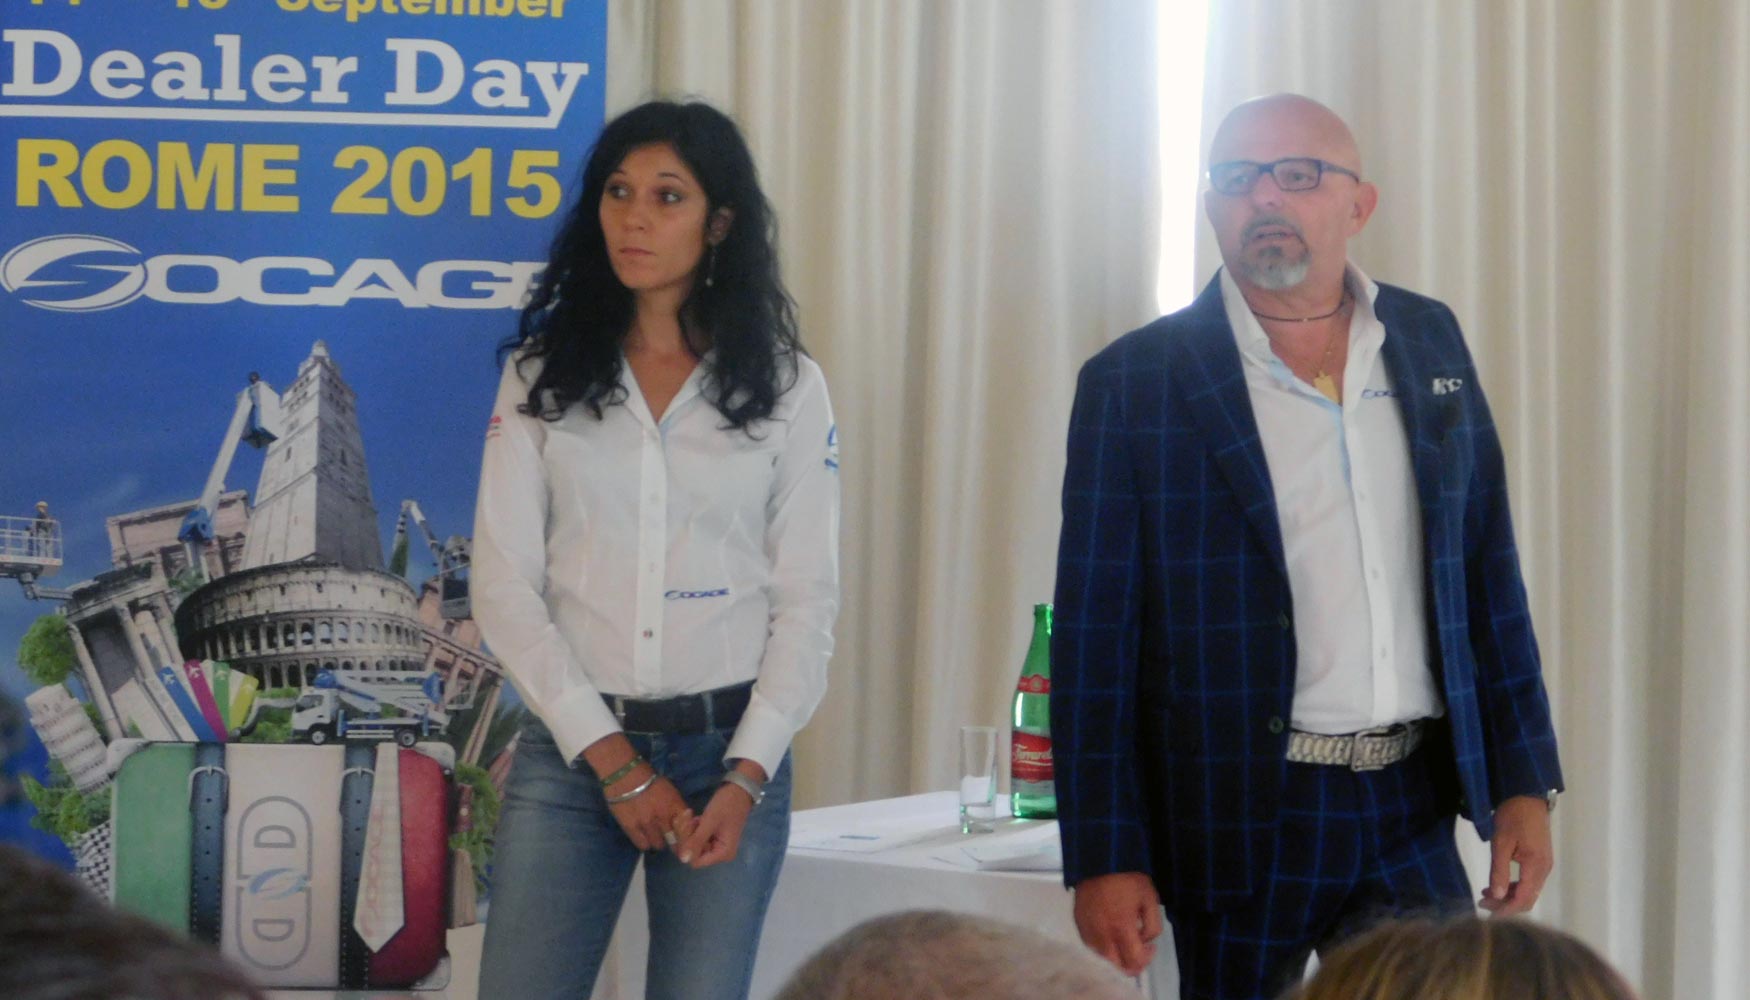 Fiorenzo Flisi contestando a las preguntas de los invitados sobre las novedades que se presentaron en el Dealer Day